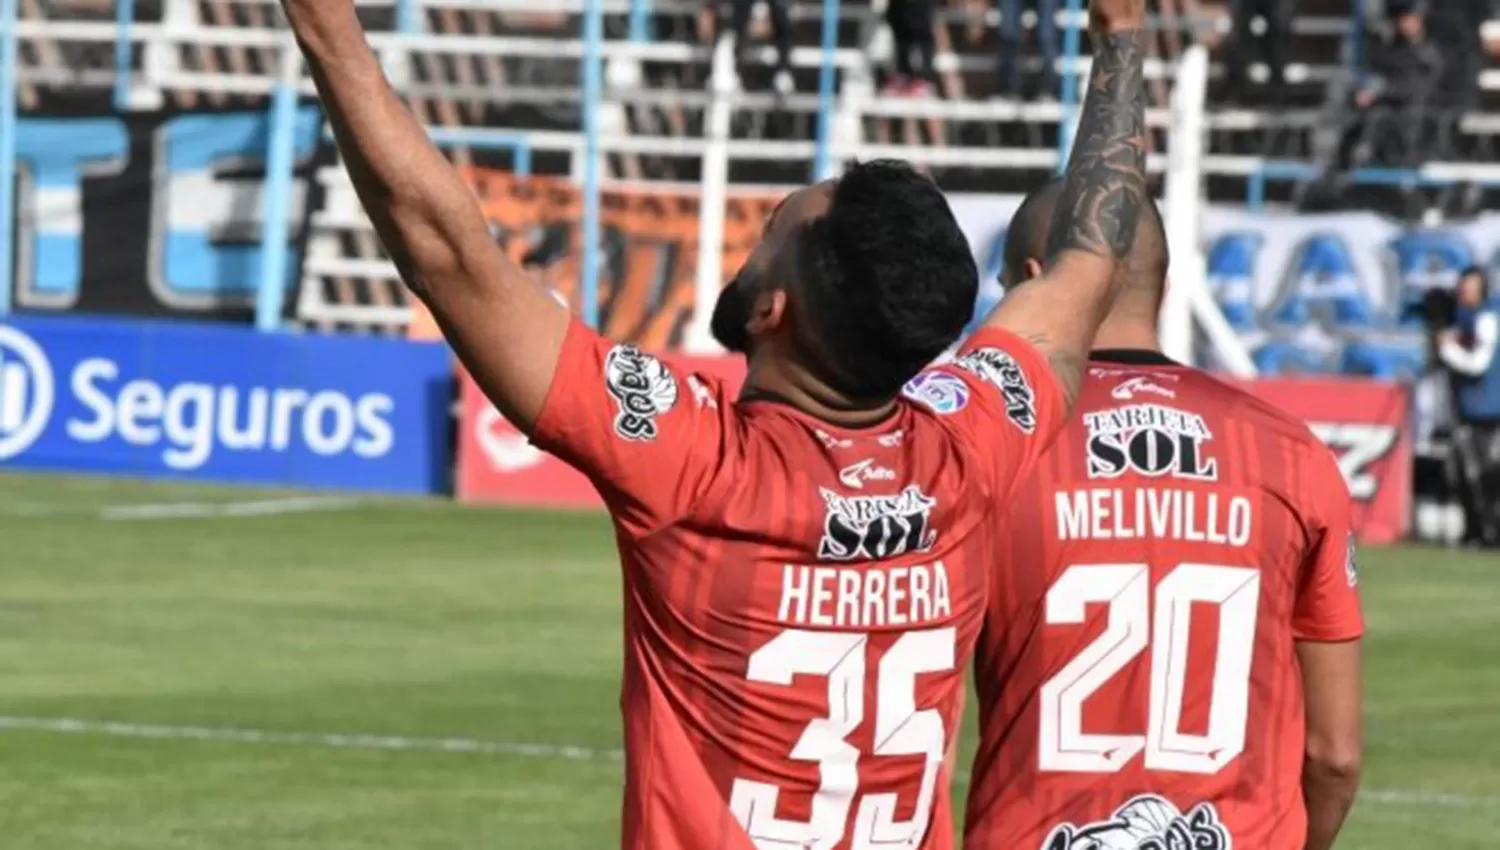 Herrera y Melivillo, dos jugadores fundamentales del Ferroviario. (FOTO TOMADA DE TWITTER @CopaArgentina)